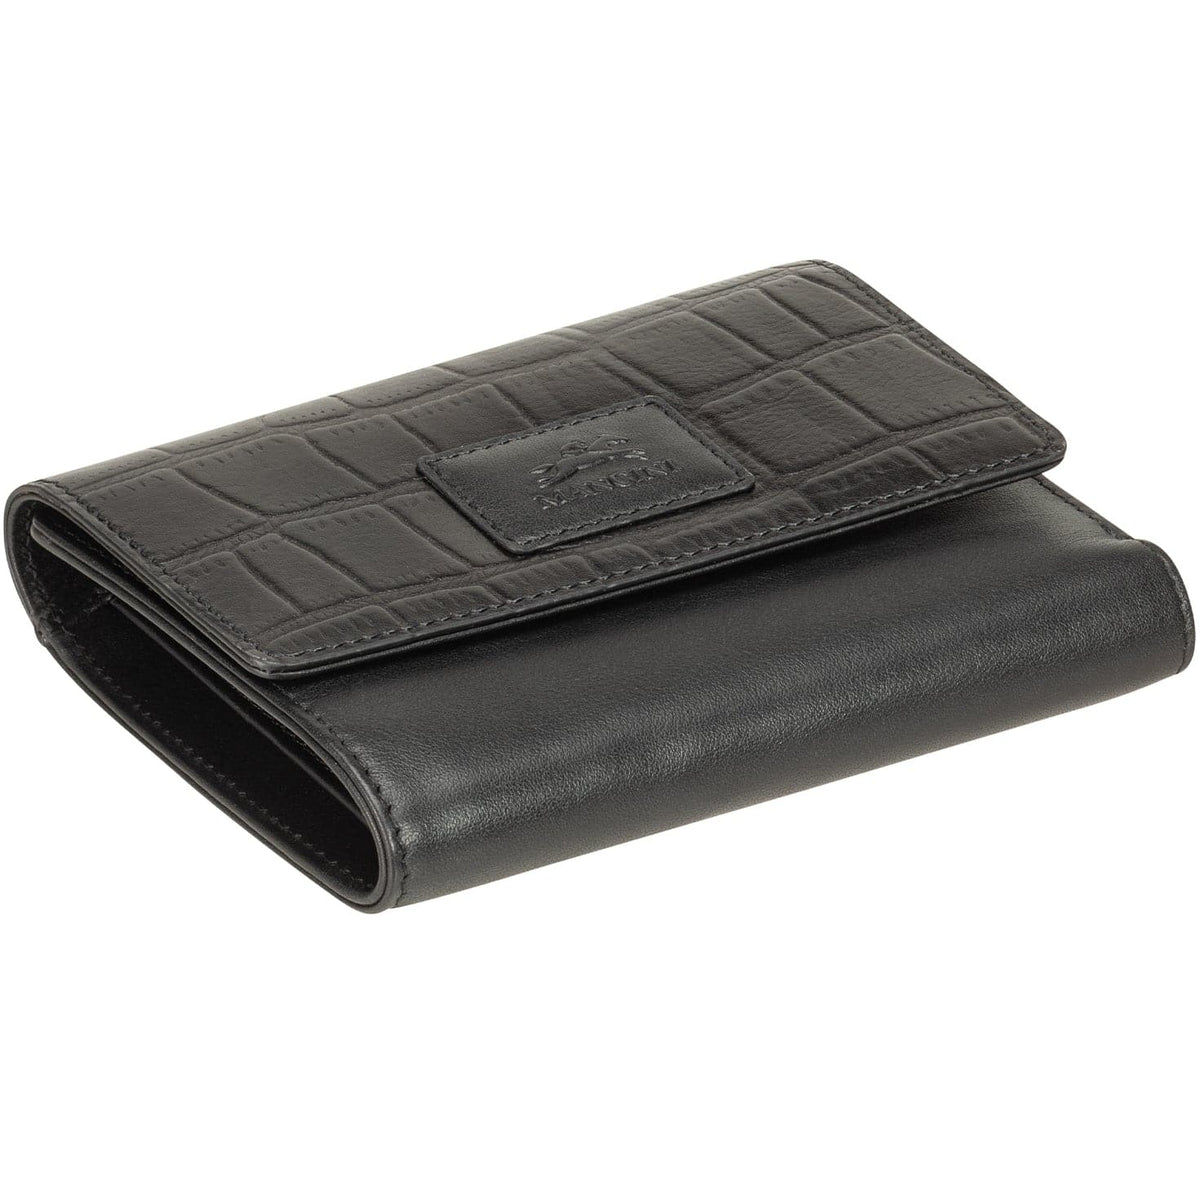 Mancini Croco RFID Secure Medium Clutch Trifold Wallet